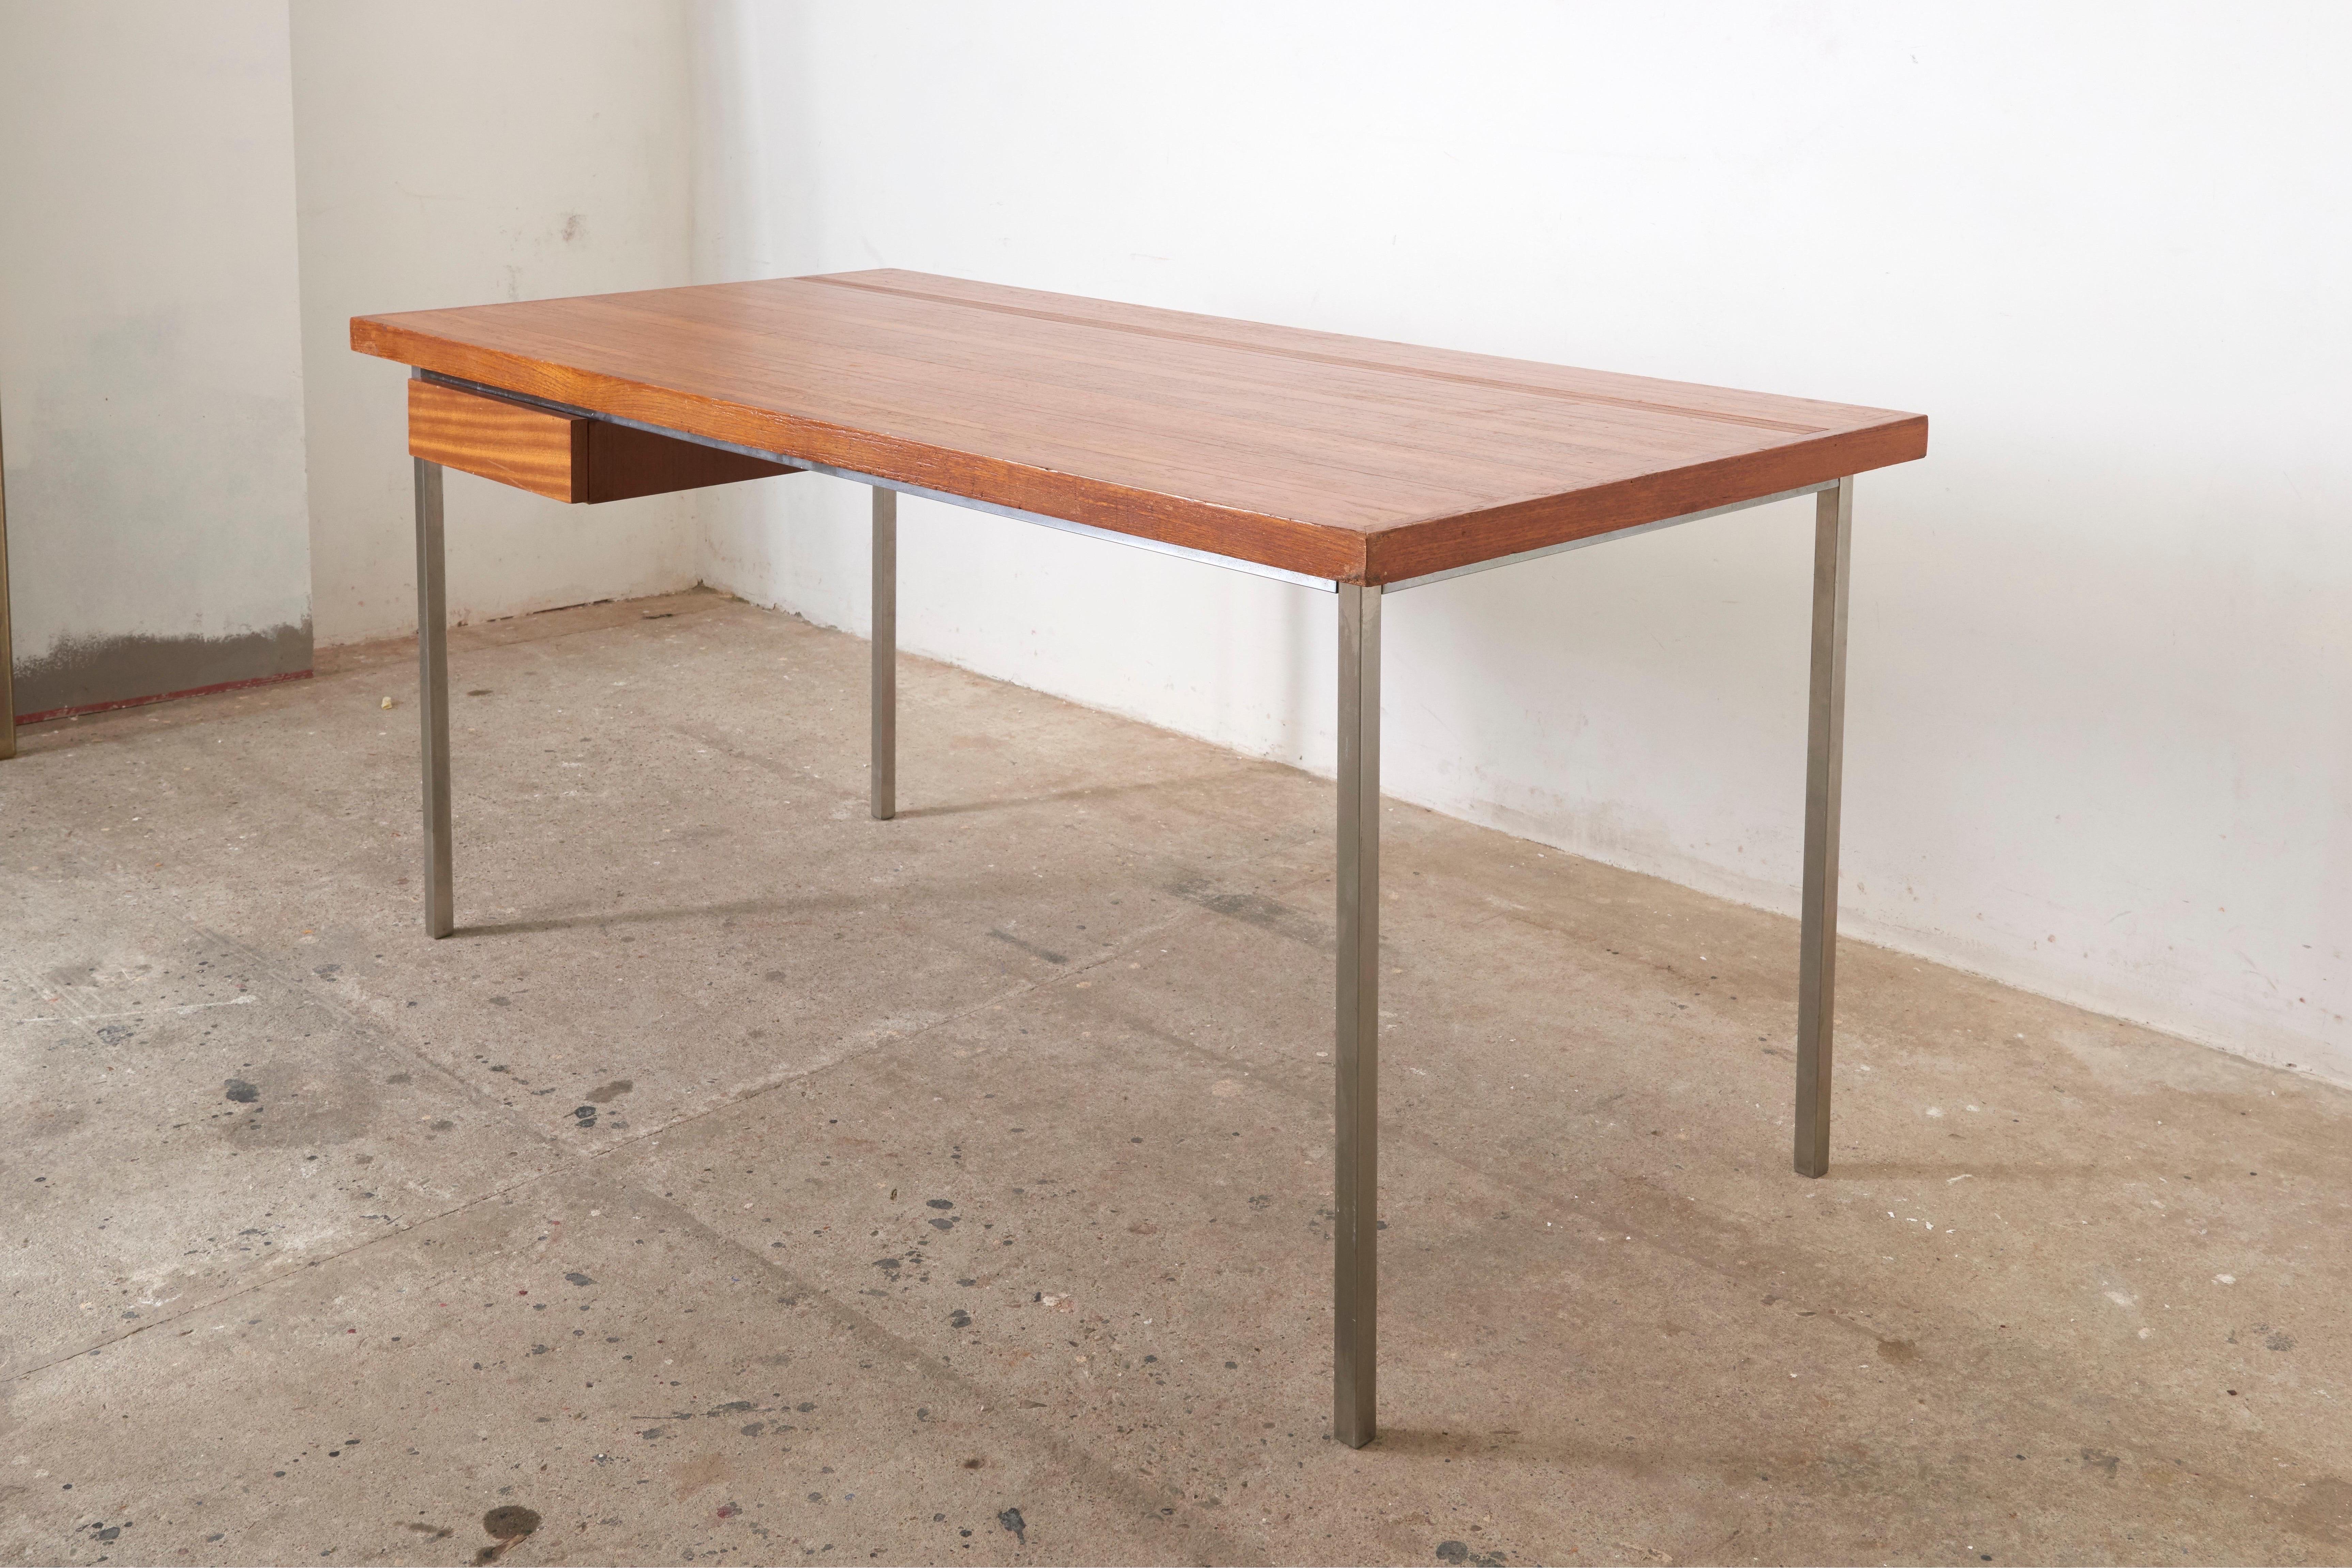 Massiver großer Schreibtisch von Philippe Meerman, belgischer Architekt, entworfen für die Coene. 

Die Tischplatte weist ein wunderschönes Fassmuster auf und besteht aus einer massiven Eichenholzplatte, die aus tangential gesägten Eichenholzlatten